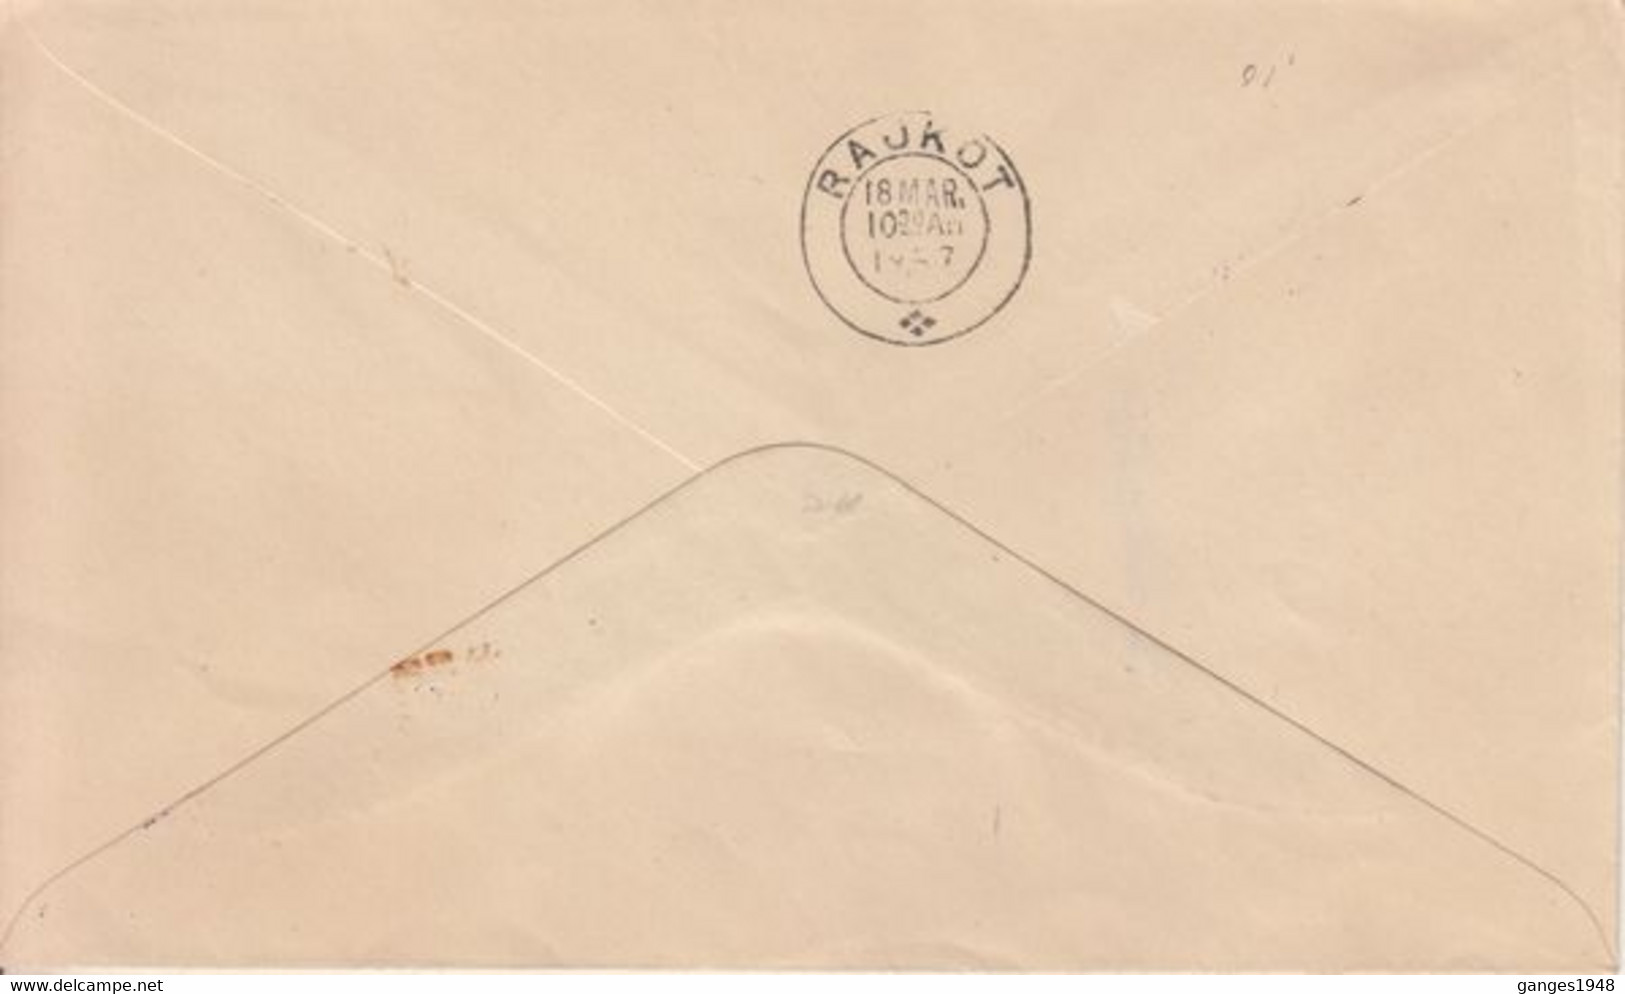 Maldives  1957  Cover Franked  4 Stamps To  Rajkot  India  #  32119 D  Inde Indien - Maldivas (...-1965)